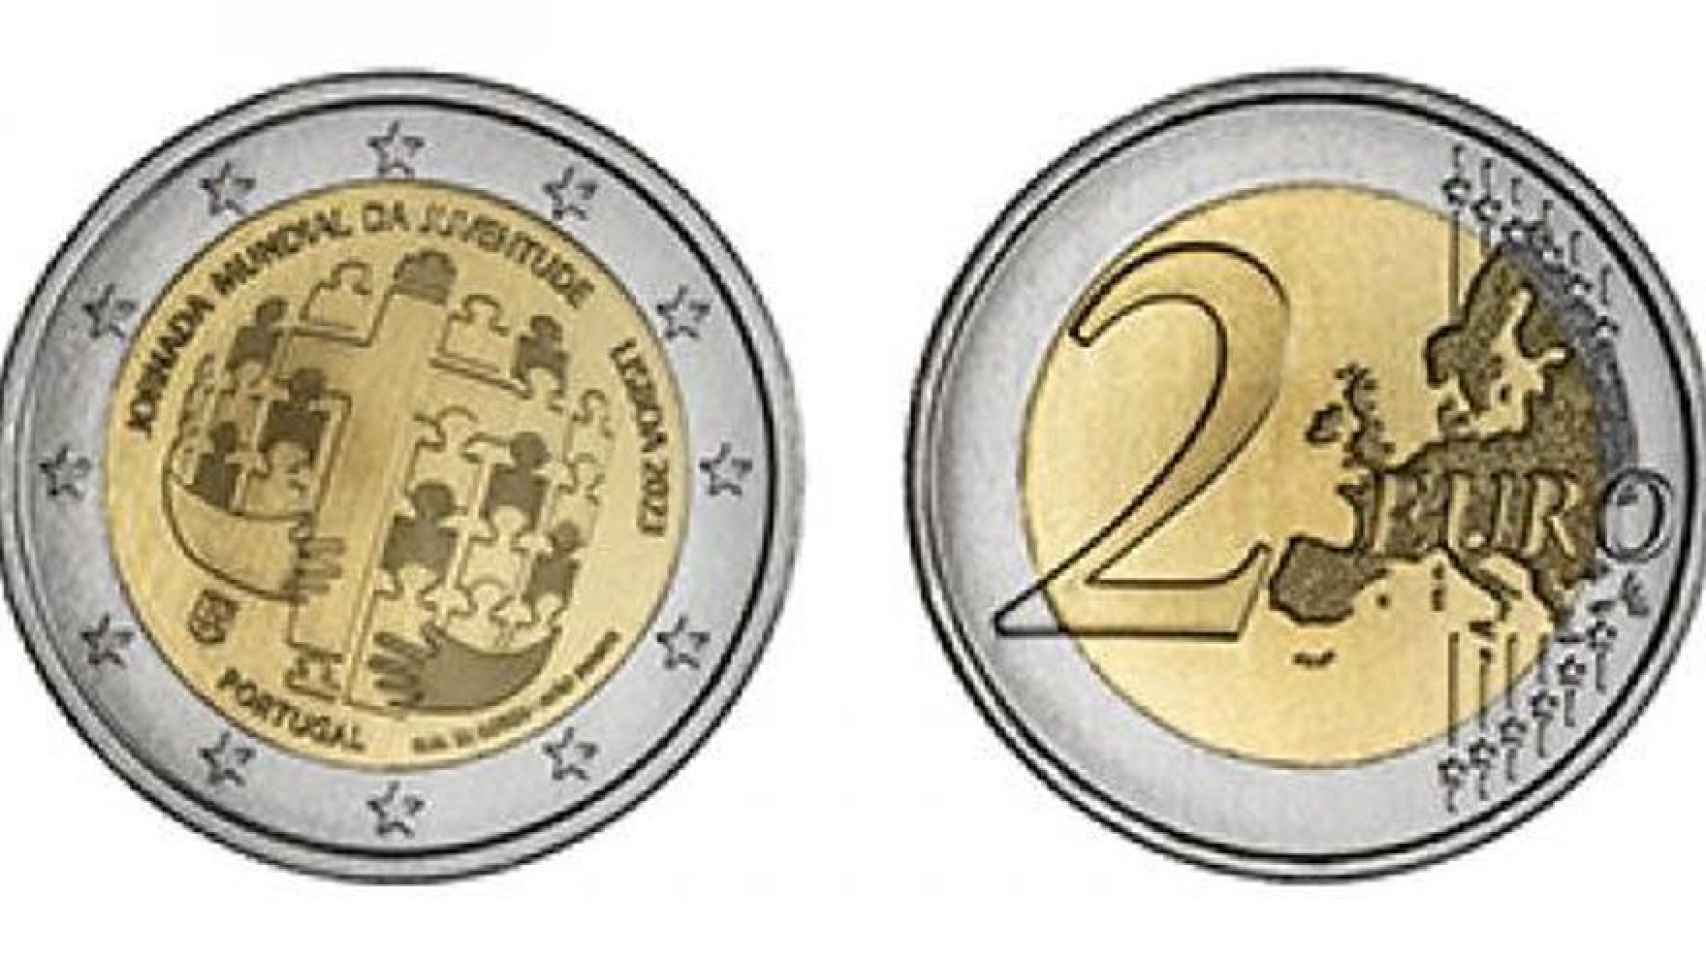 La nueva moneda de dos euros de Portugal que conmemora la JMJ.